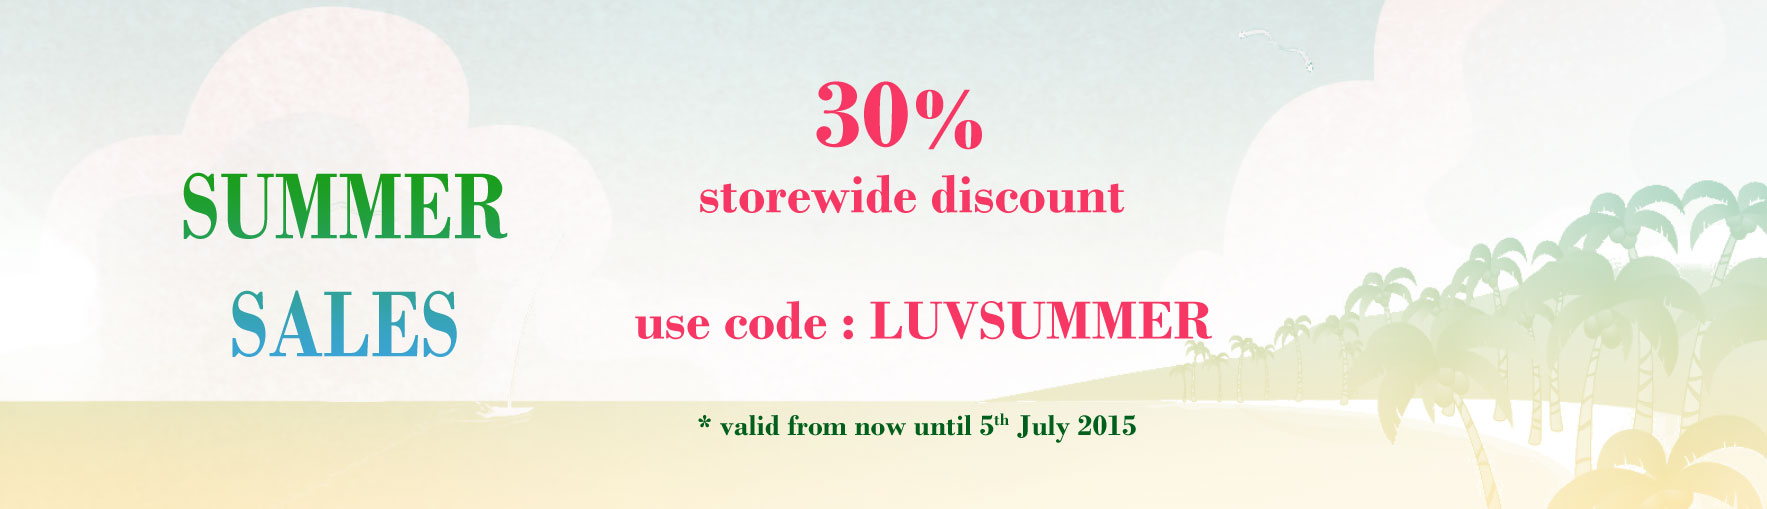 Summer Sales 30% Storewide Discount. Shop Now!